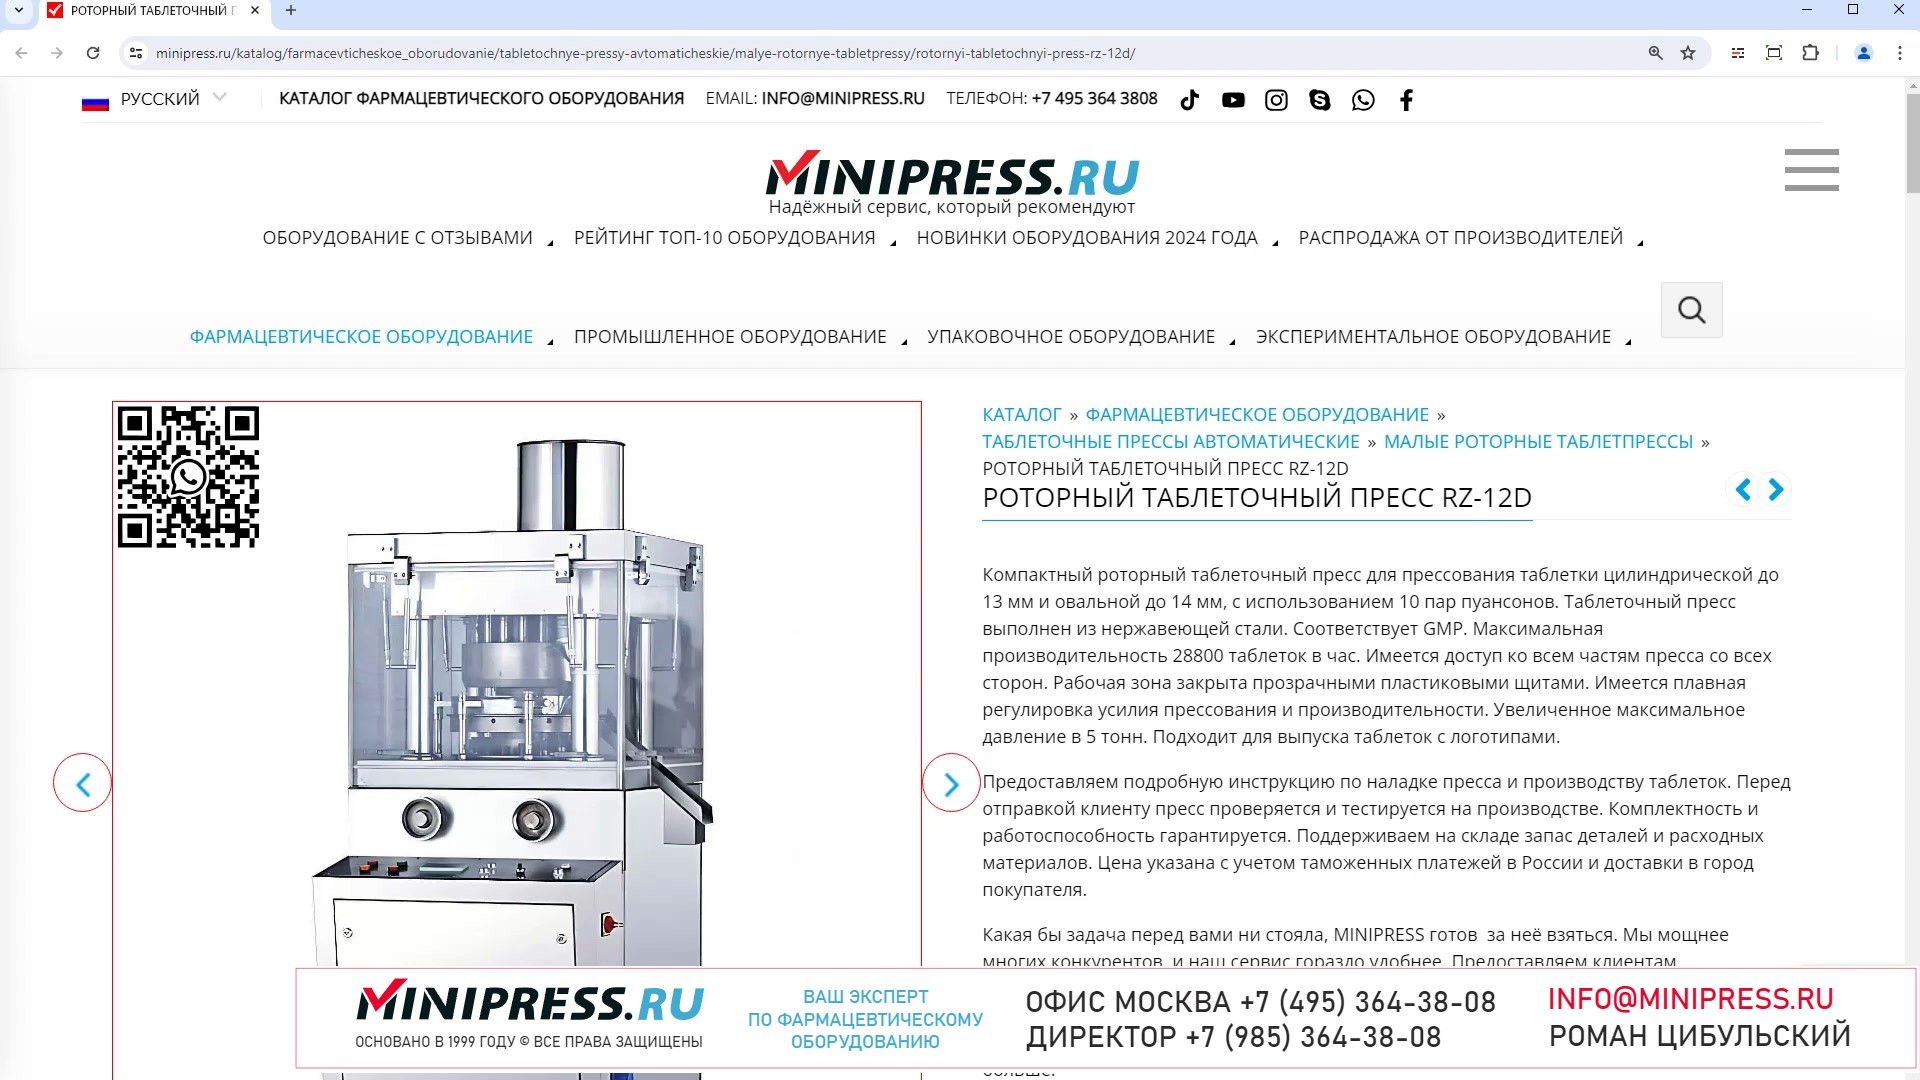 Minipress.ru Роторный таблеточный пресс RZ-12D